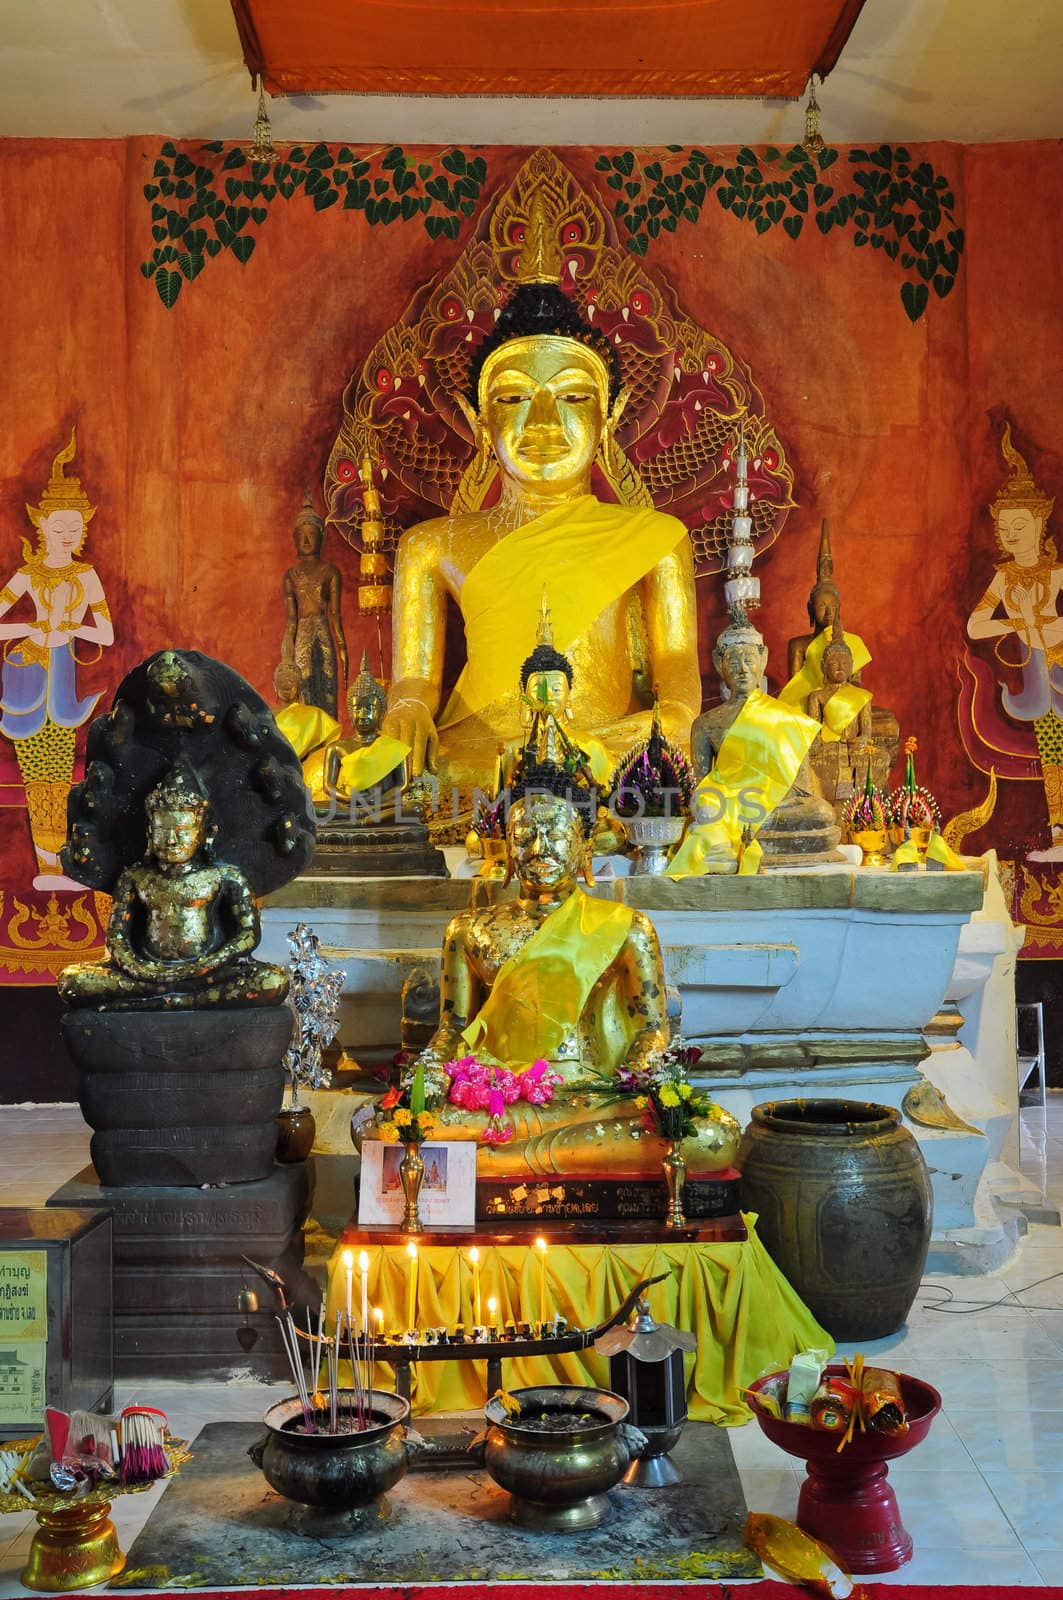 golden buddha statue